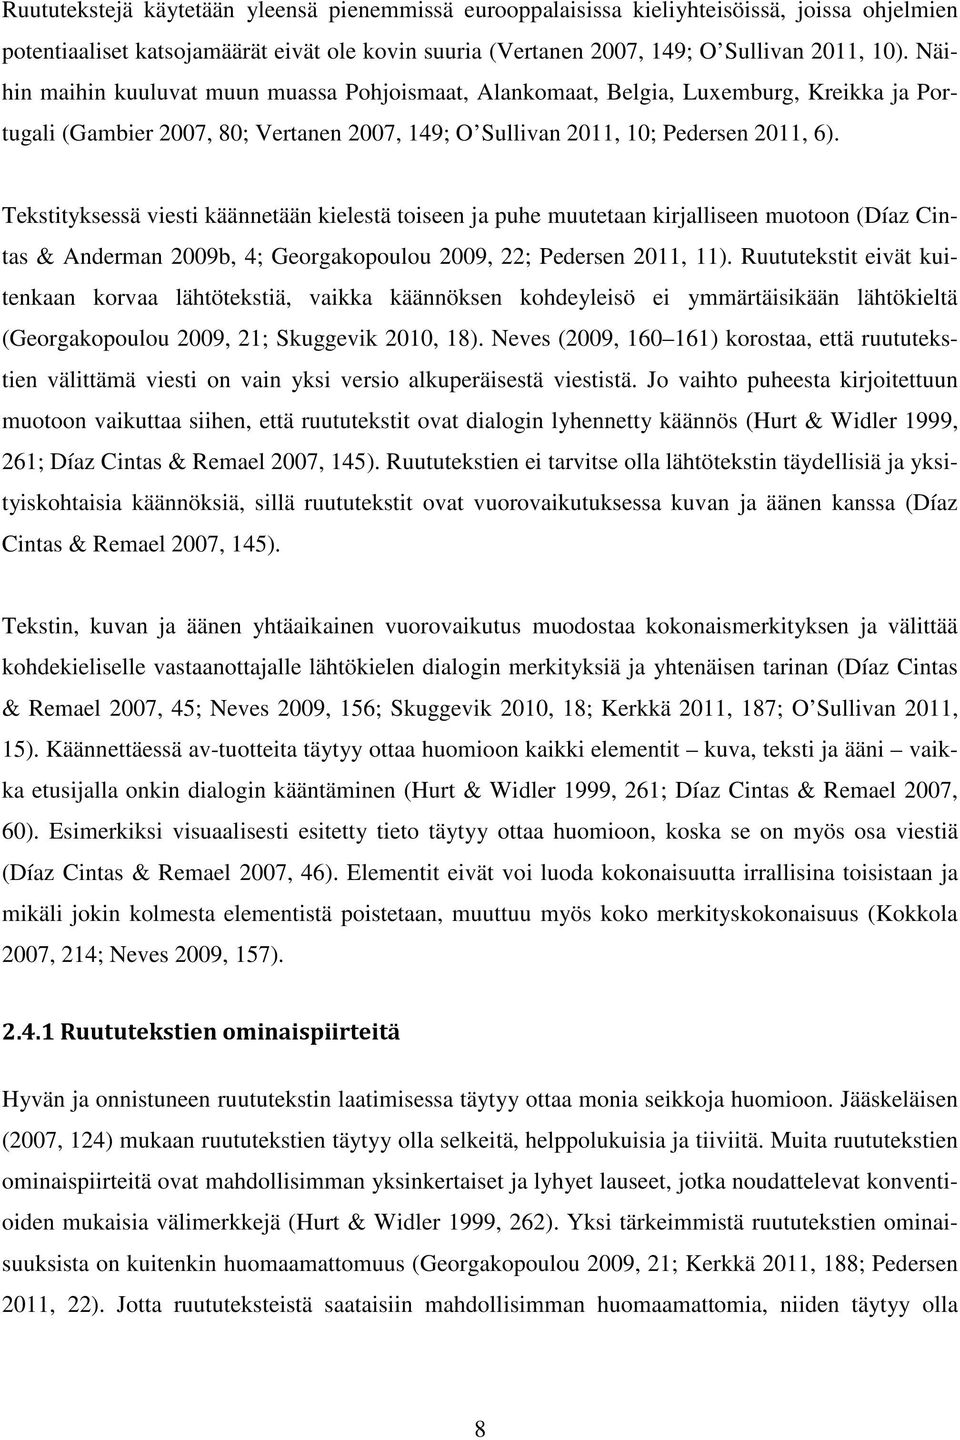 Tekstityksessä viesti käännetään kielestä toiseen ja puhe muutetaan kirjalliseen muotoon (Díaz Cintas & Anderman 2009b, 4; Georgakopoulou 2009, 22; Pedersen 2011, 11).